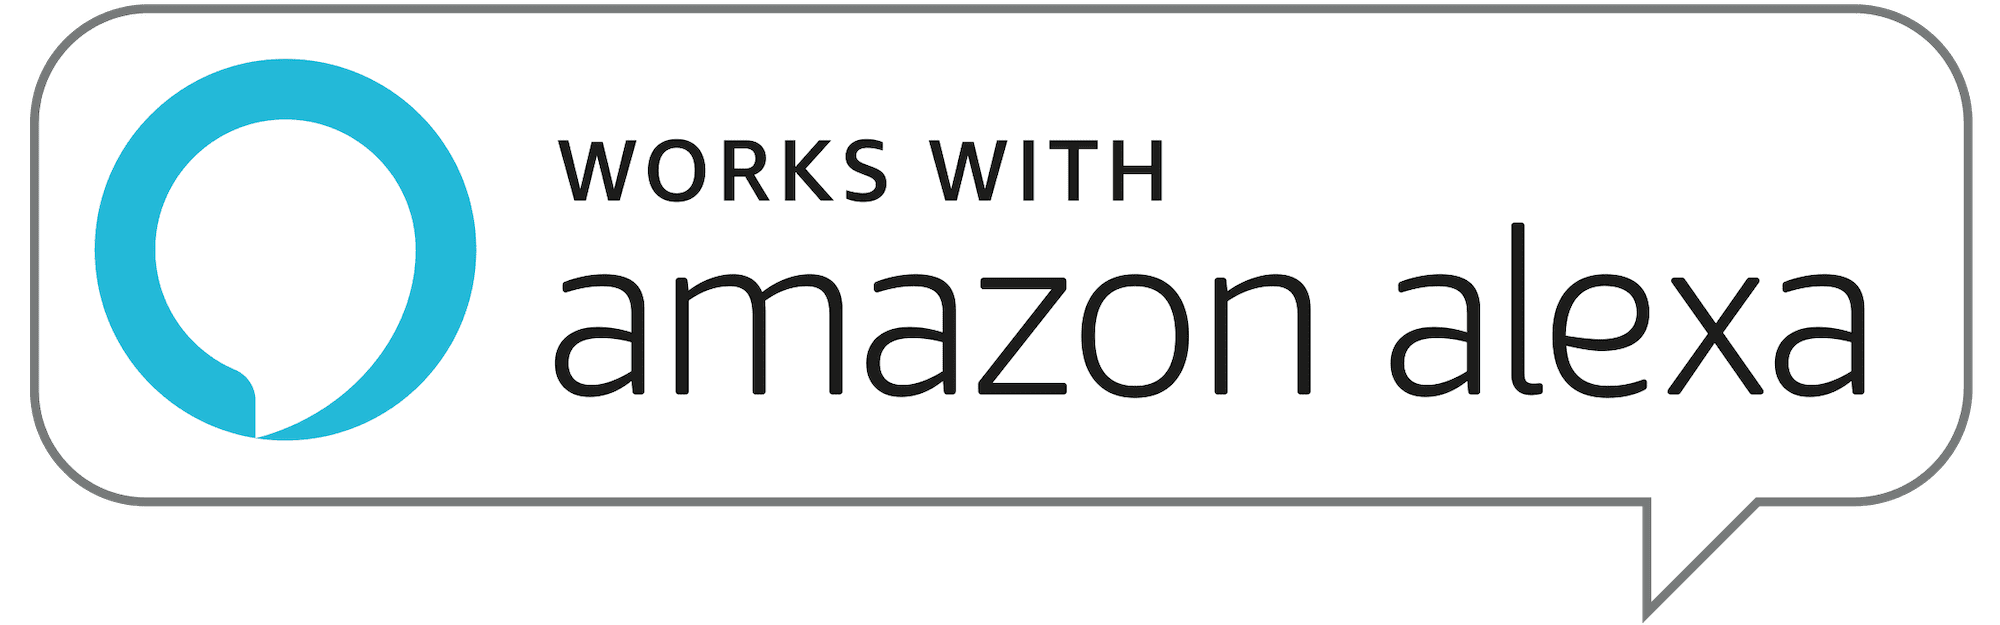 Works with Amazon Alexa Badge